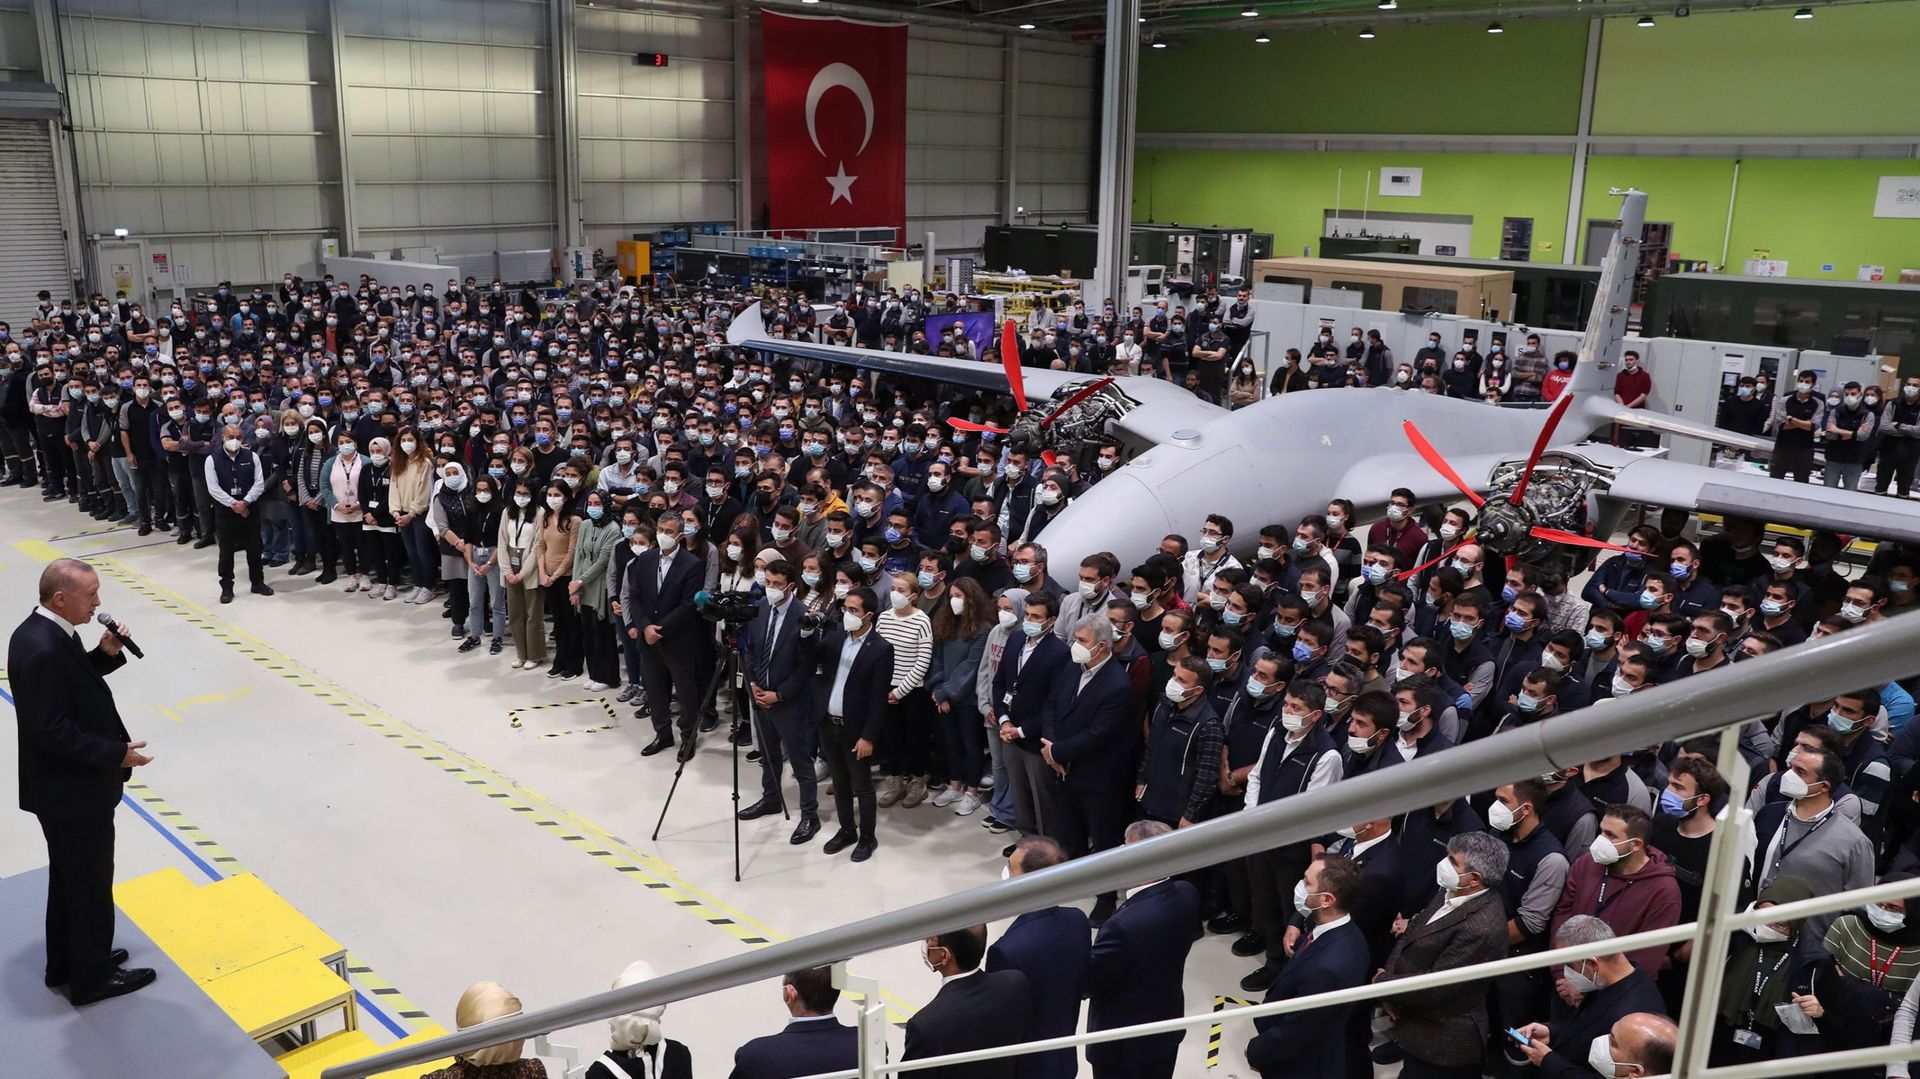 Le président turc Recep Tayyip Erdogan s’adresse aux employés de Baykar lors de sa visite pour présenter ses condoléances à la famille d’Ozdemir Bayraktar, le fondateur de l’une des principales entreprises de défense turques Baykar, après le décès de Bayr